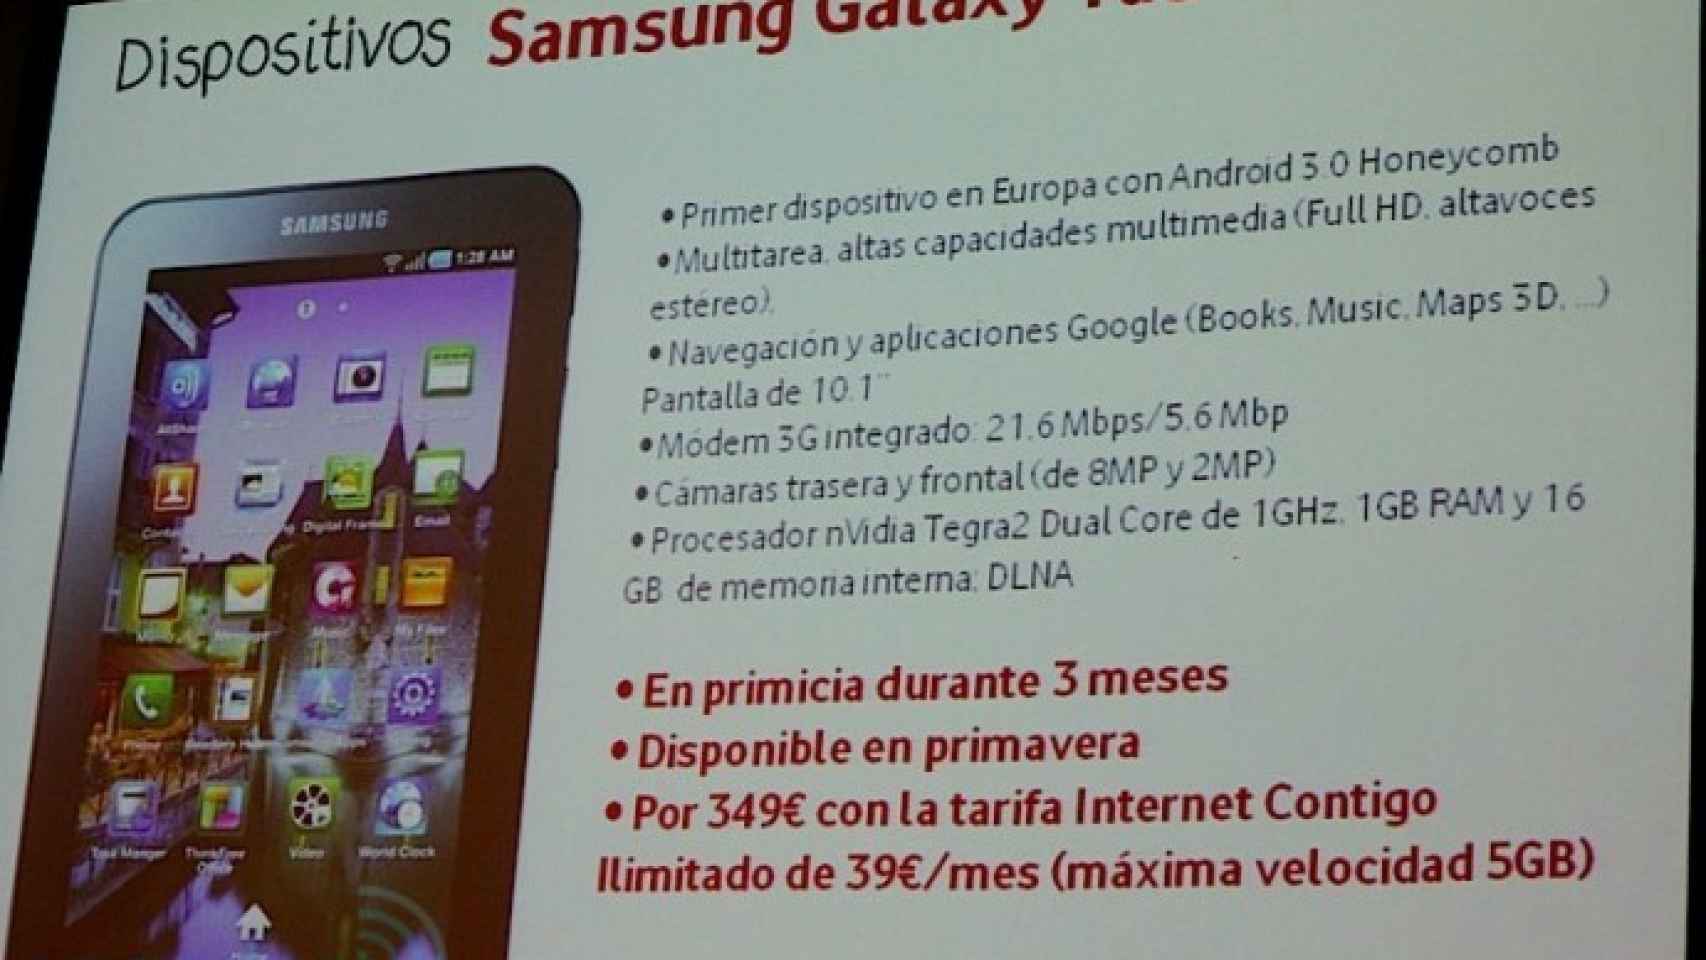 Vodafone tendrá en exclusiva la Samsung Galaxy Tab 10.1, el LG Optimus 2X, el SE Xperia Play y el Nexus S en primavera